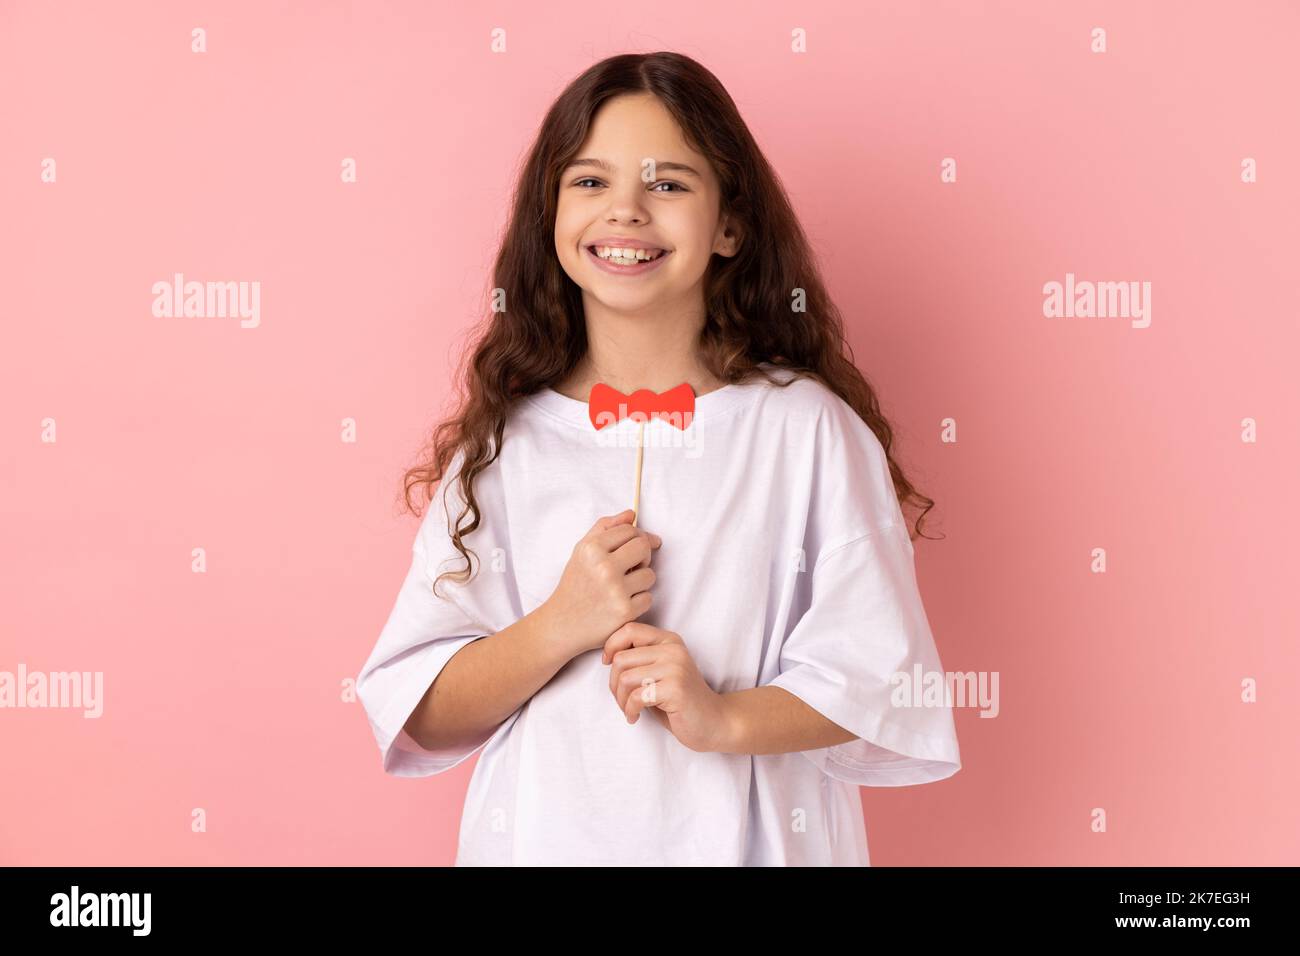 Ritratto di piccola ragazza soddisfatta che indossa una T-shirt bianca che tiene divertente cravatta di carta, che gioca, indossando un accessorio masquerade. Studio in interni isolato su sfondo rosa. Foto Stock